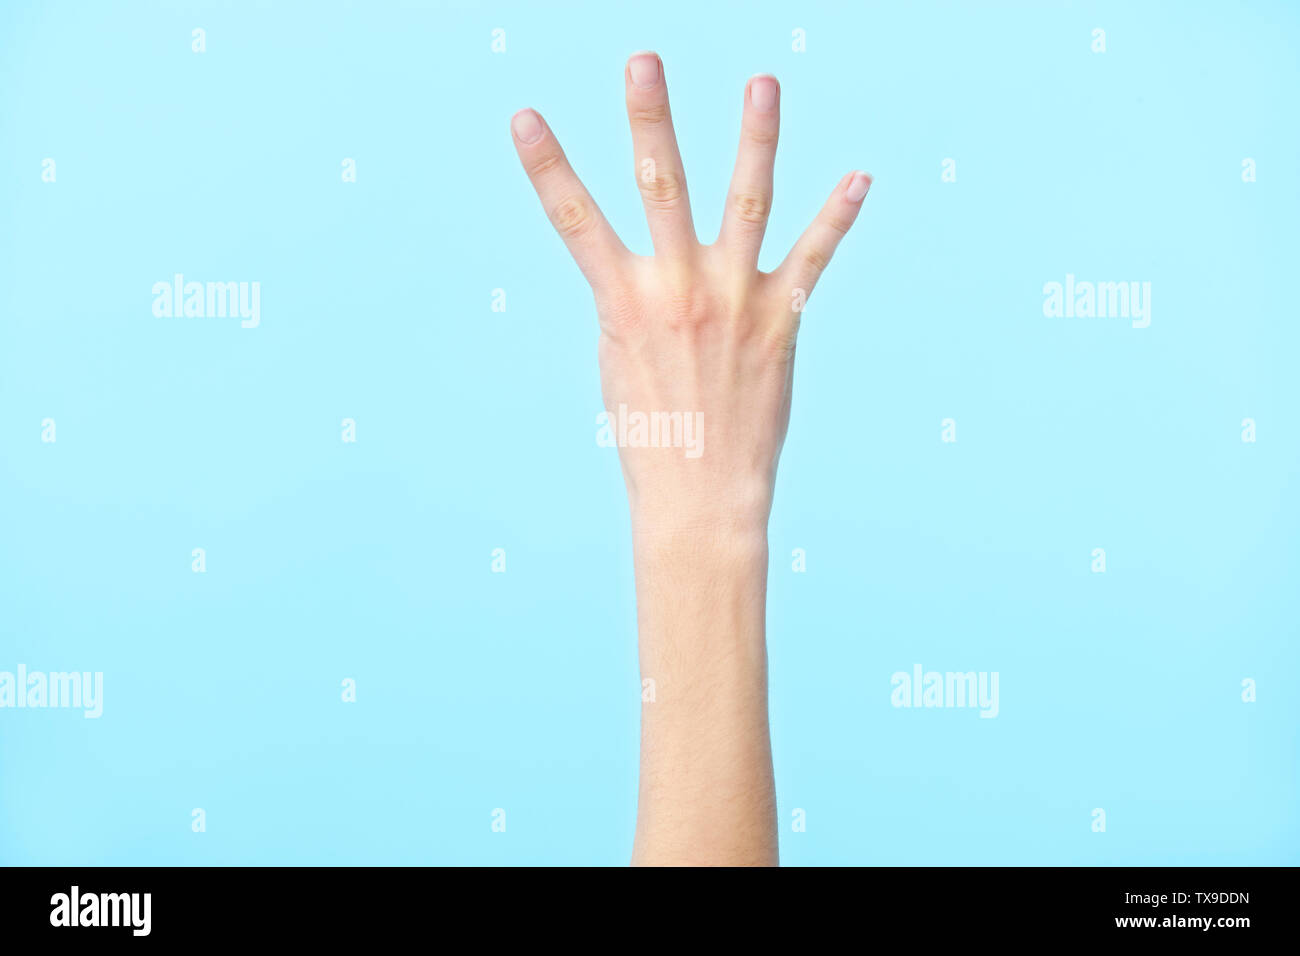 La mano humana mostrando número cuatro, aislado sobre fondo azul. Foto de stock